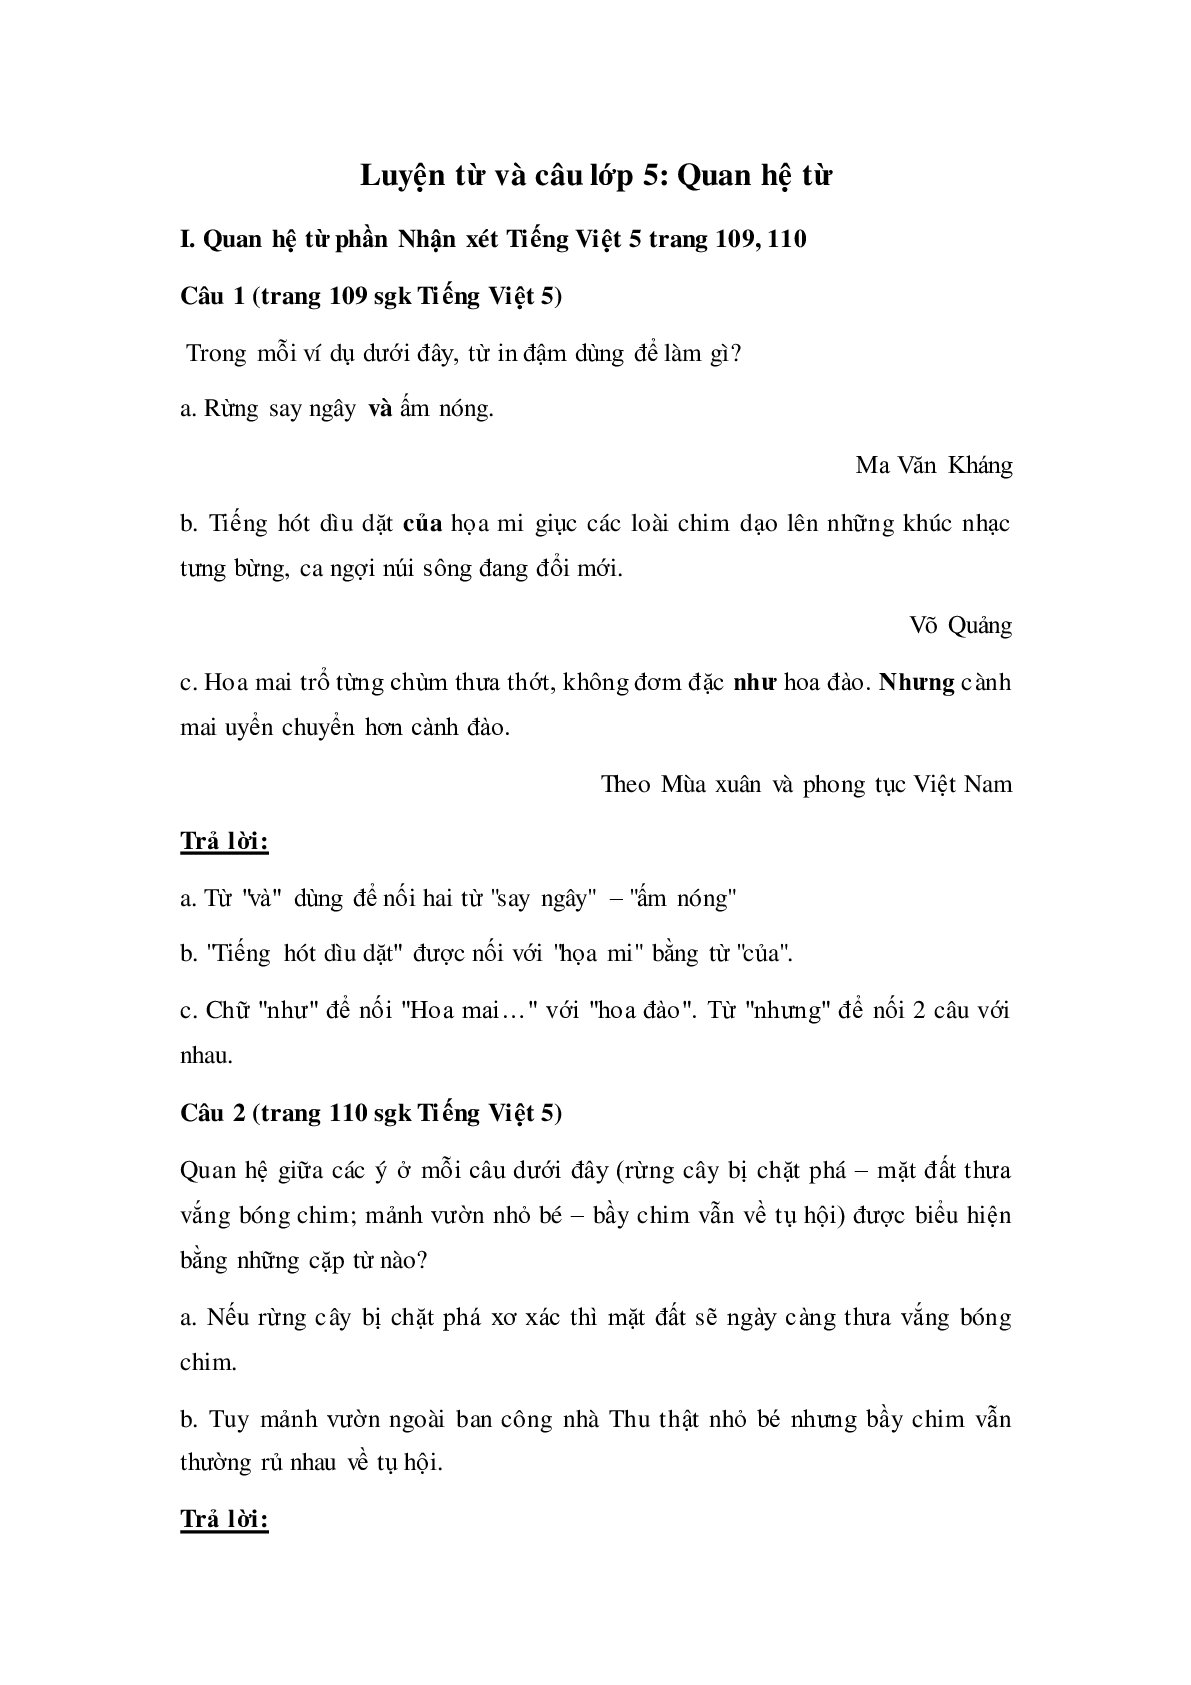 Soạn Tiếng Việt lớp 5: Luyện từ và câu: Quan hệ từ mới nhất (trang 1)